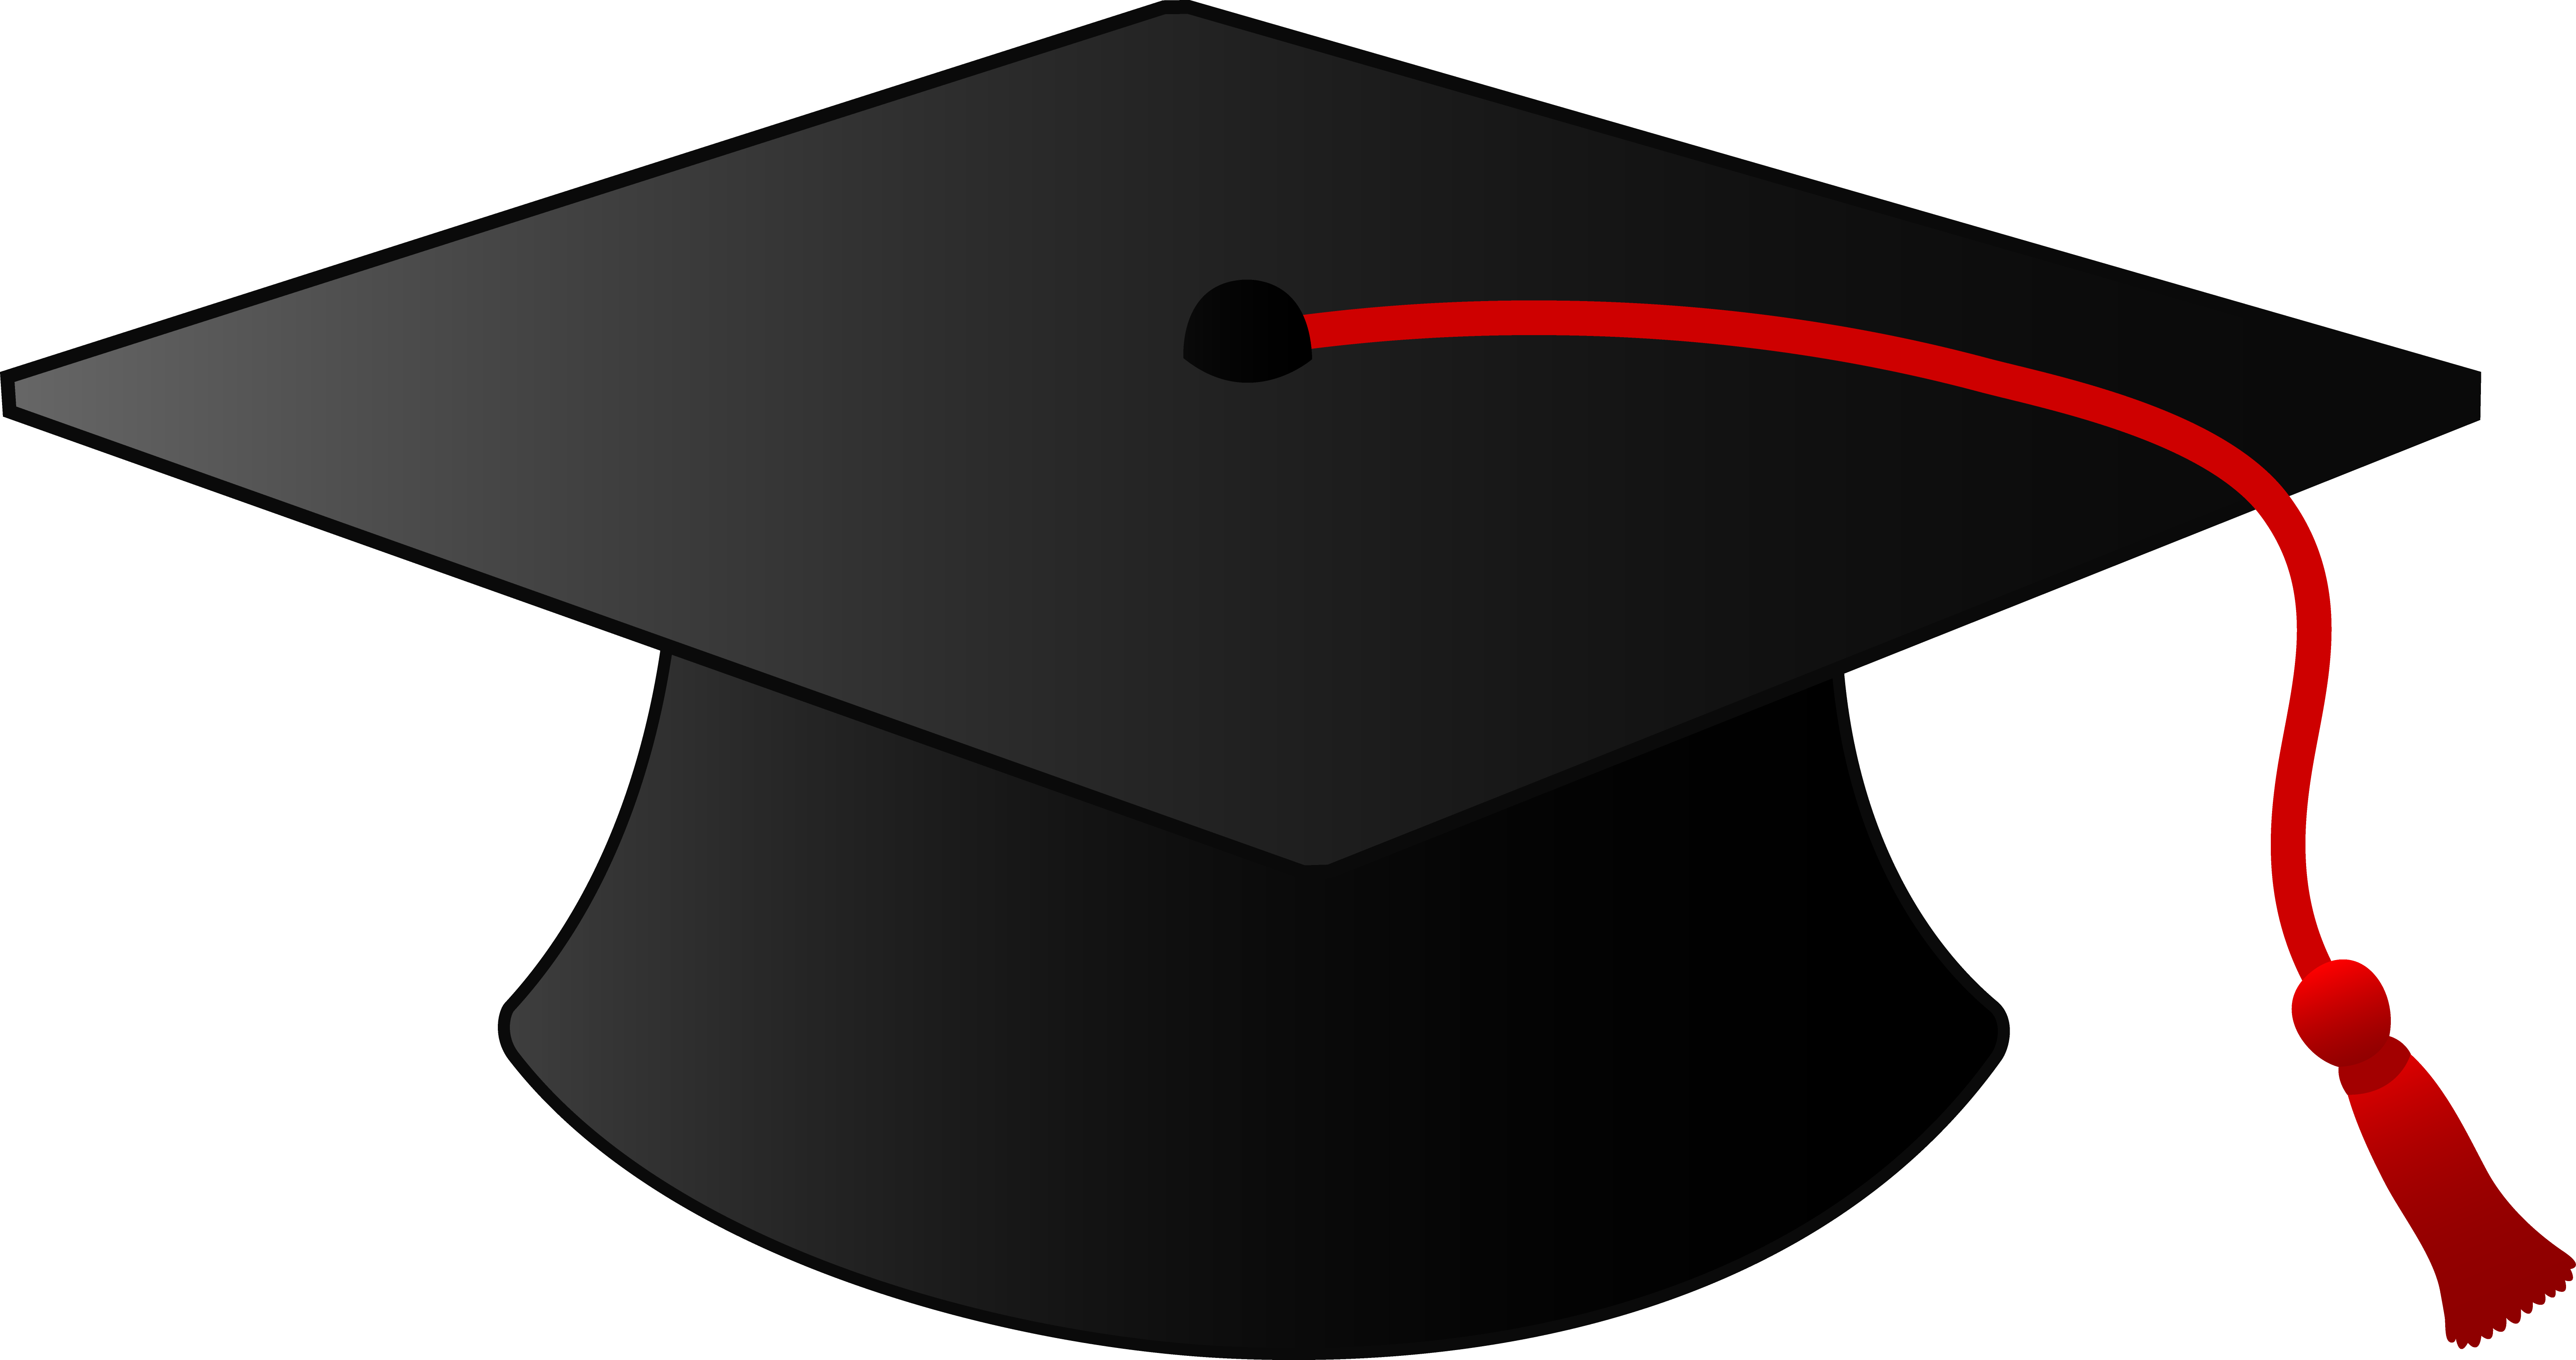 Free Graduation Cap Clipart Transparent, Download Free Graduation Cap ...